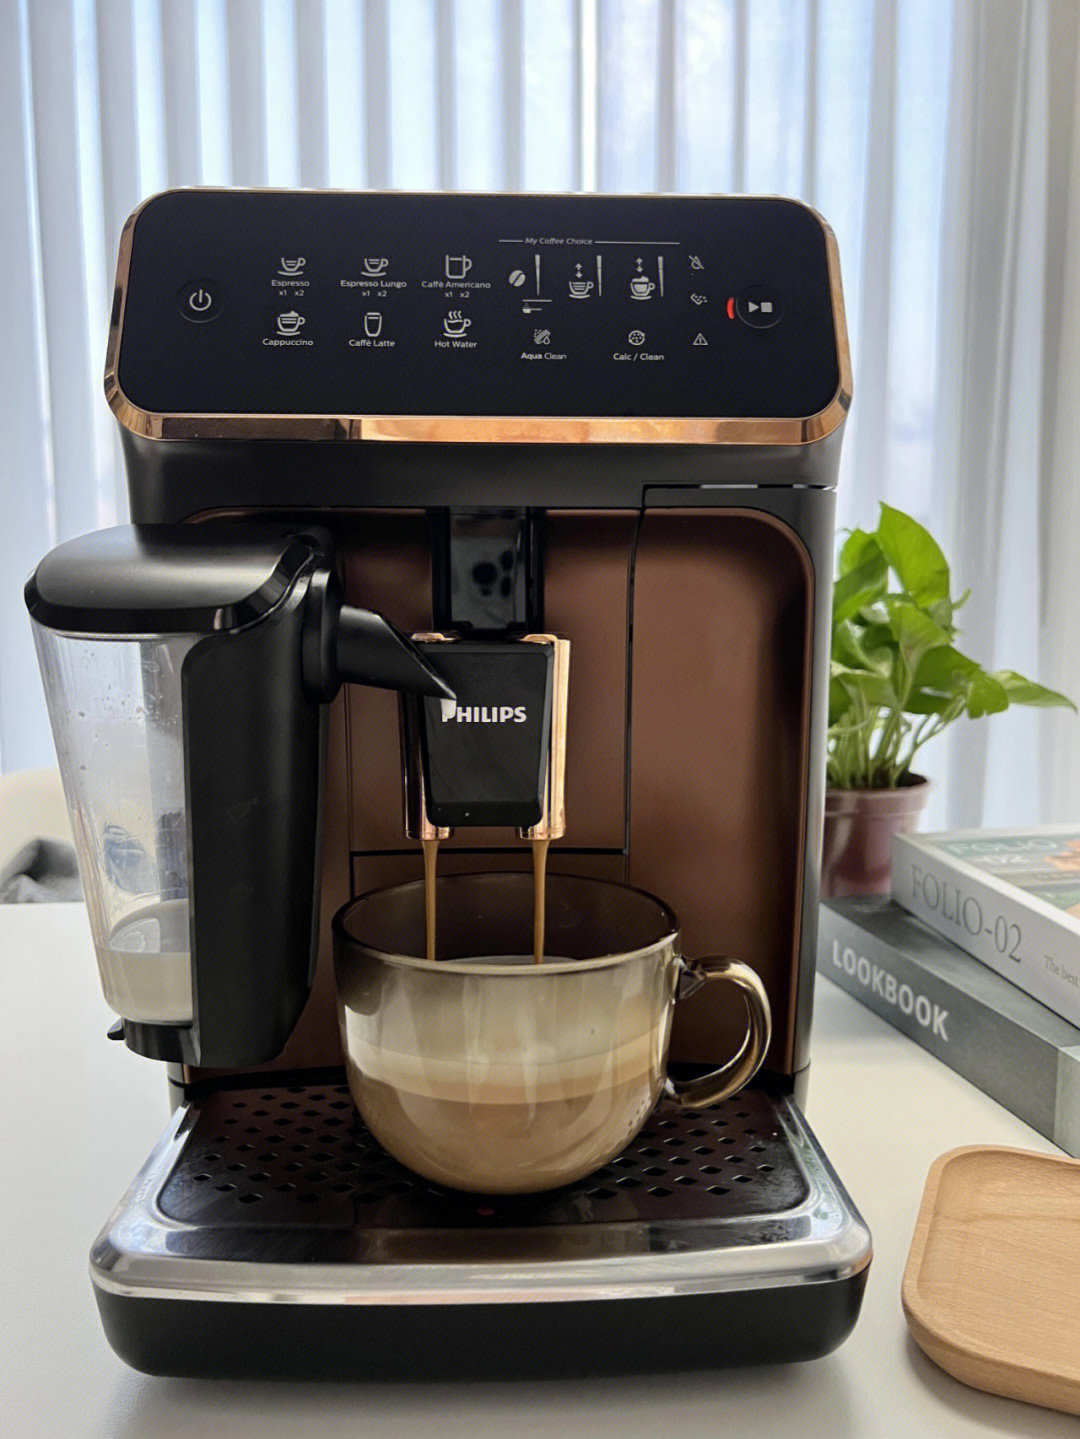 咖啡爱好者们,我发现了自己做咖啡究竟有多快乐,有了这台飞利浦咖啡机